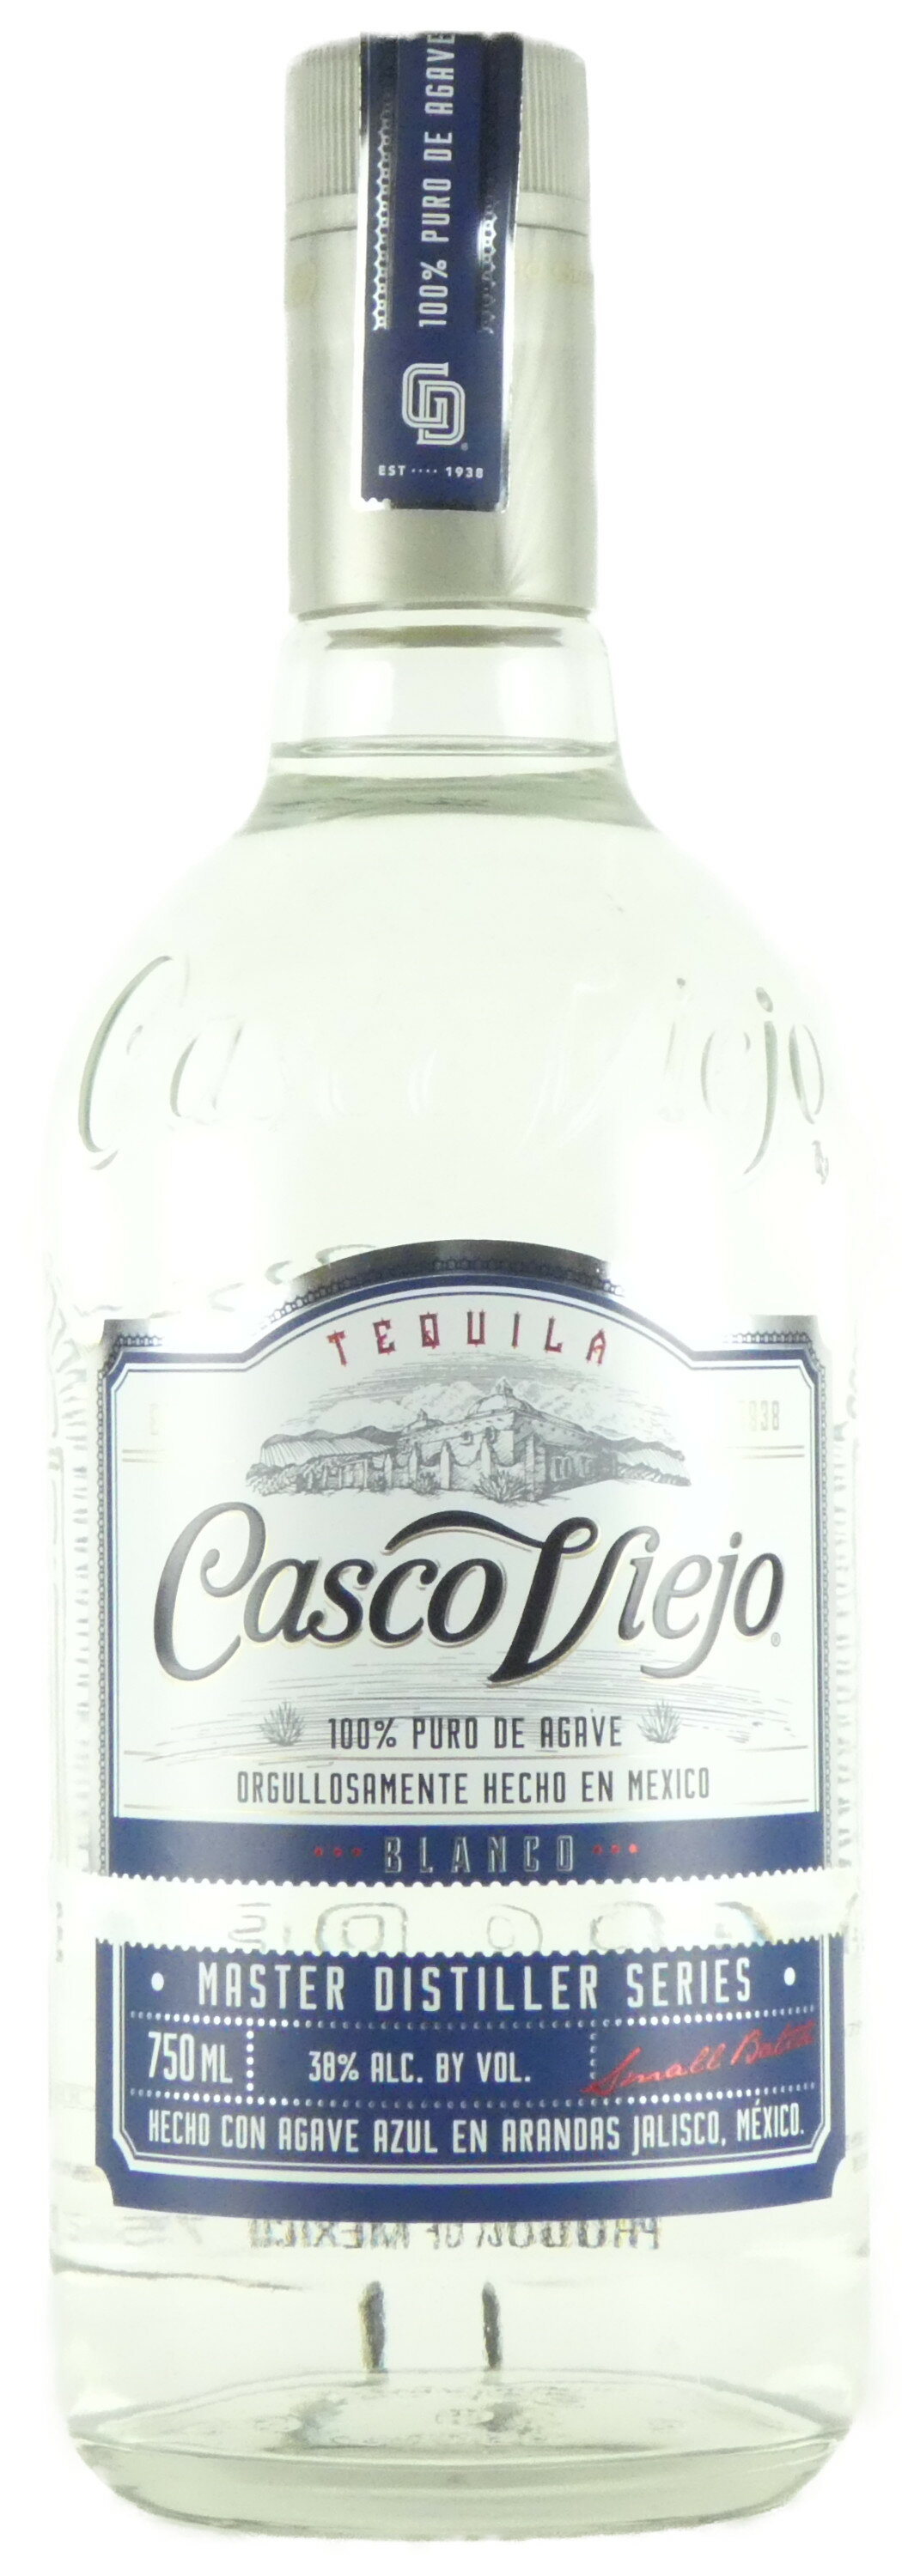  カスコ ヴィエホ ブランコ テキーラ 750ml メキシコ Casco Viejo Blanco Tequila